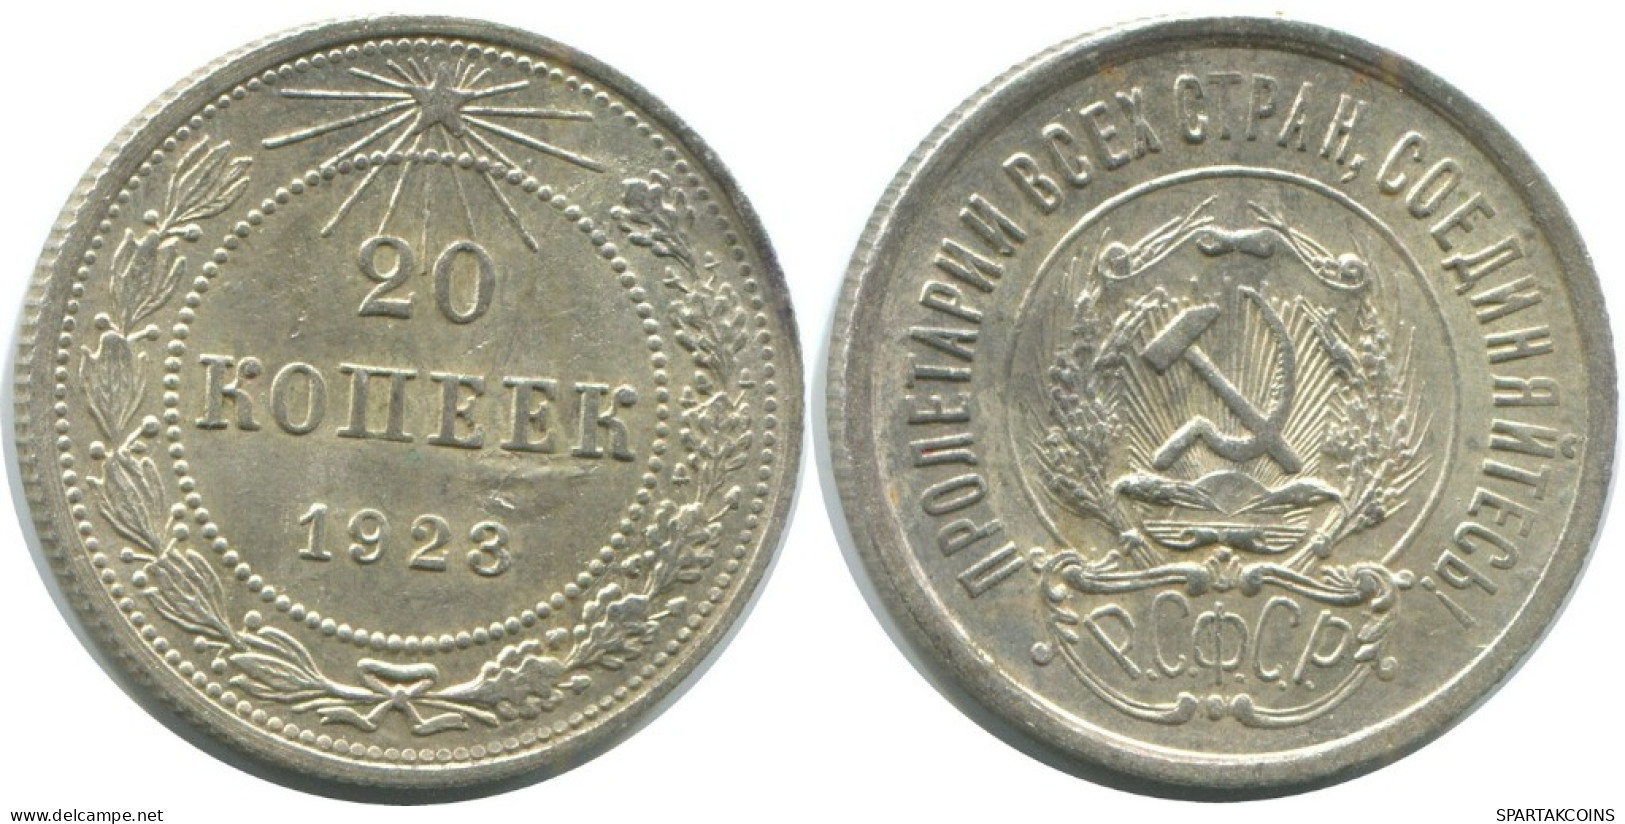 20 KOPEKS 1923 RUSSIA RSFSR SILVER Coin HIGH GRADE #AF586.4.U.A - Rusland